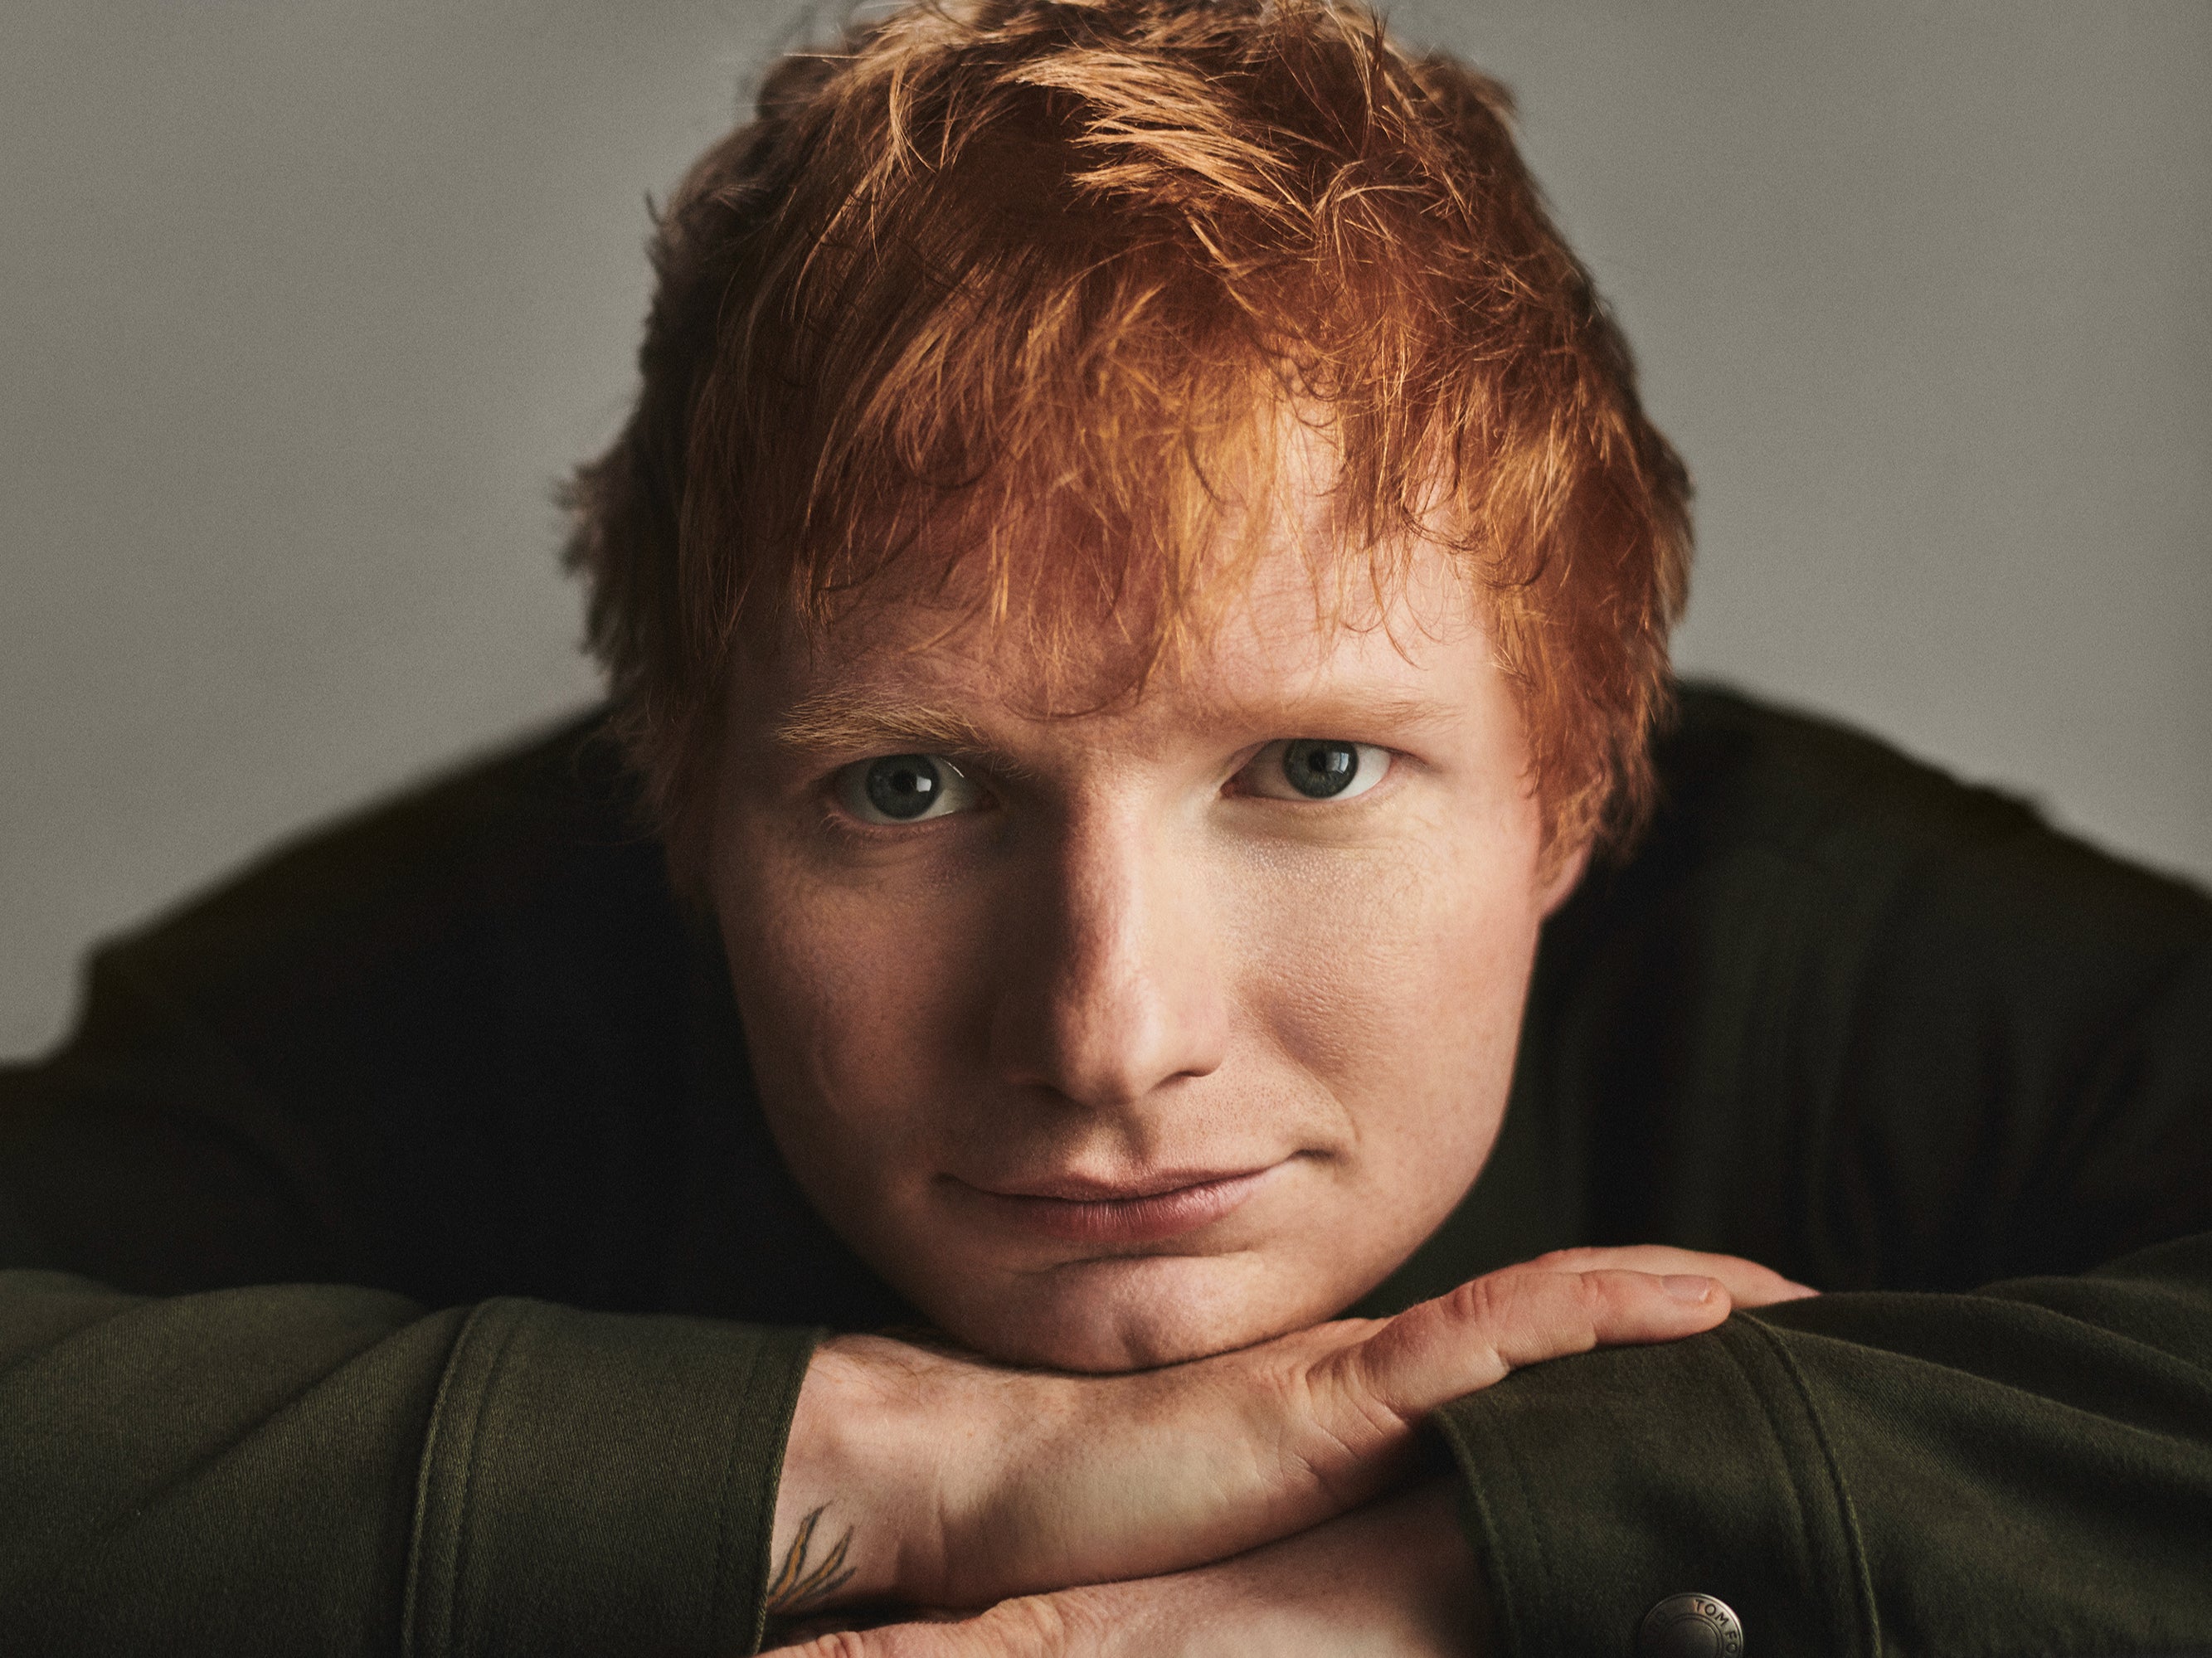 Ed Sheeran has released his fourth studio album, Equals